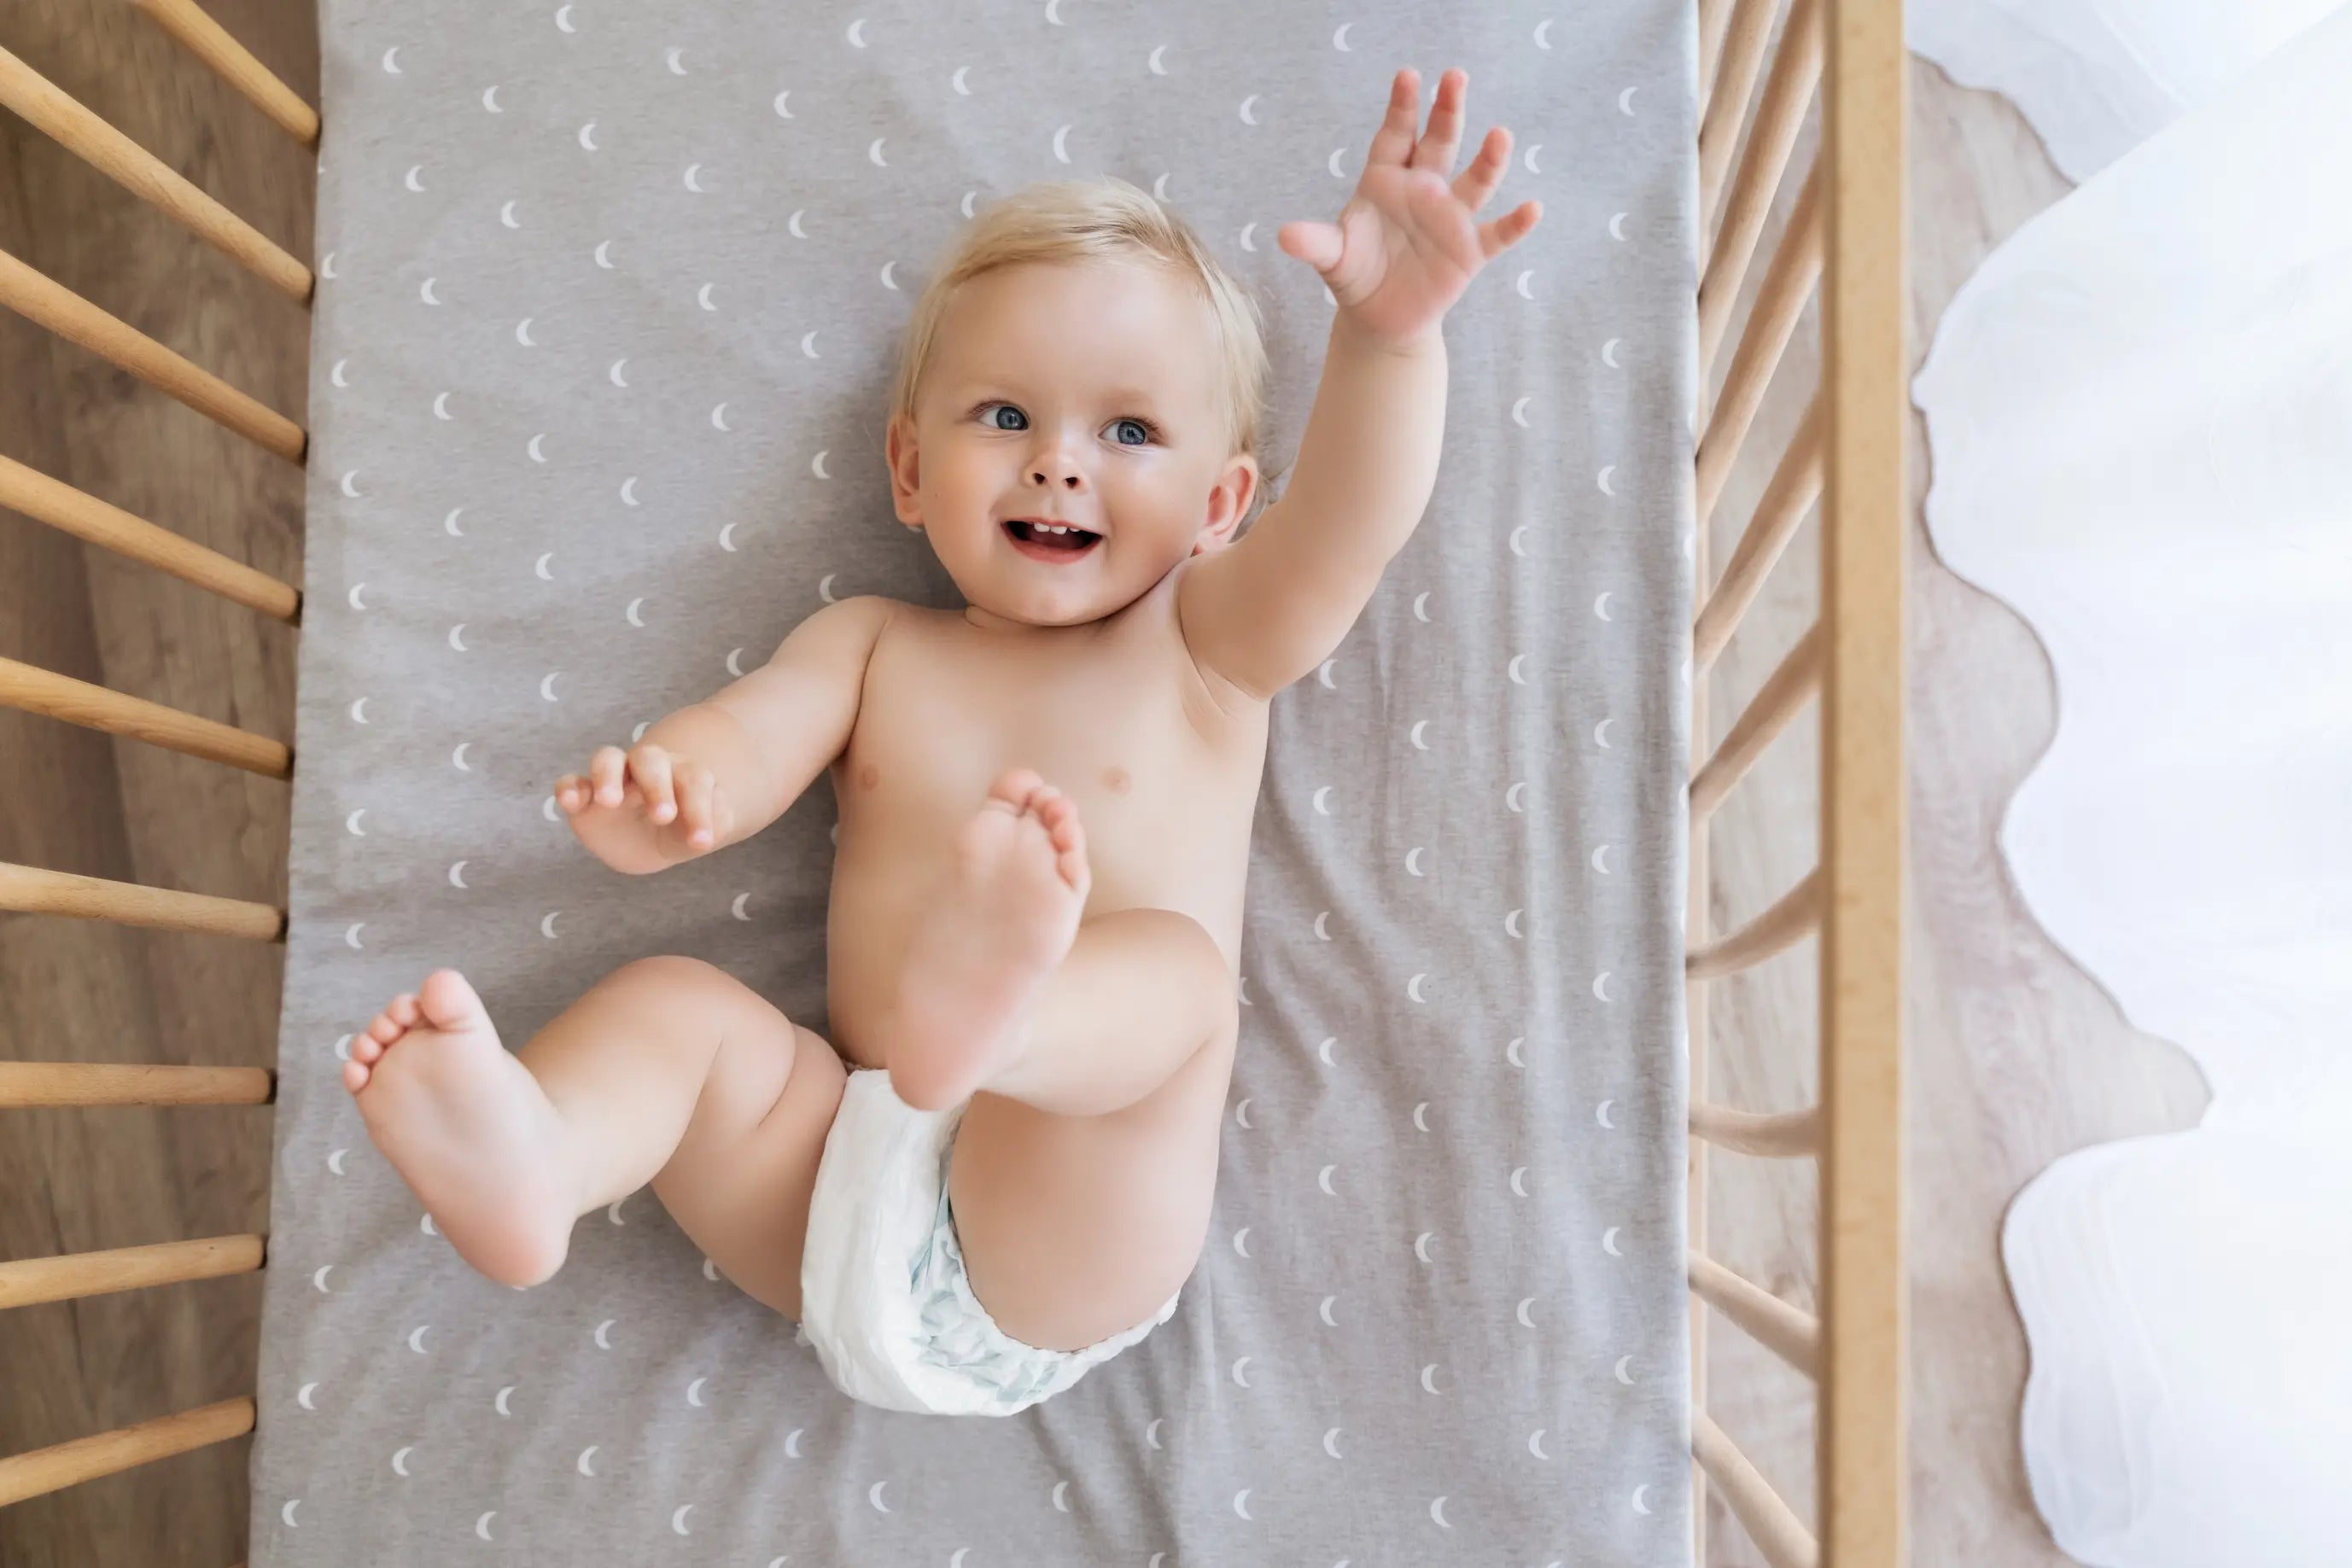 Scegliere il miglior lettino per neonati: guida completa